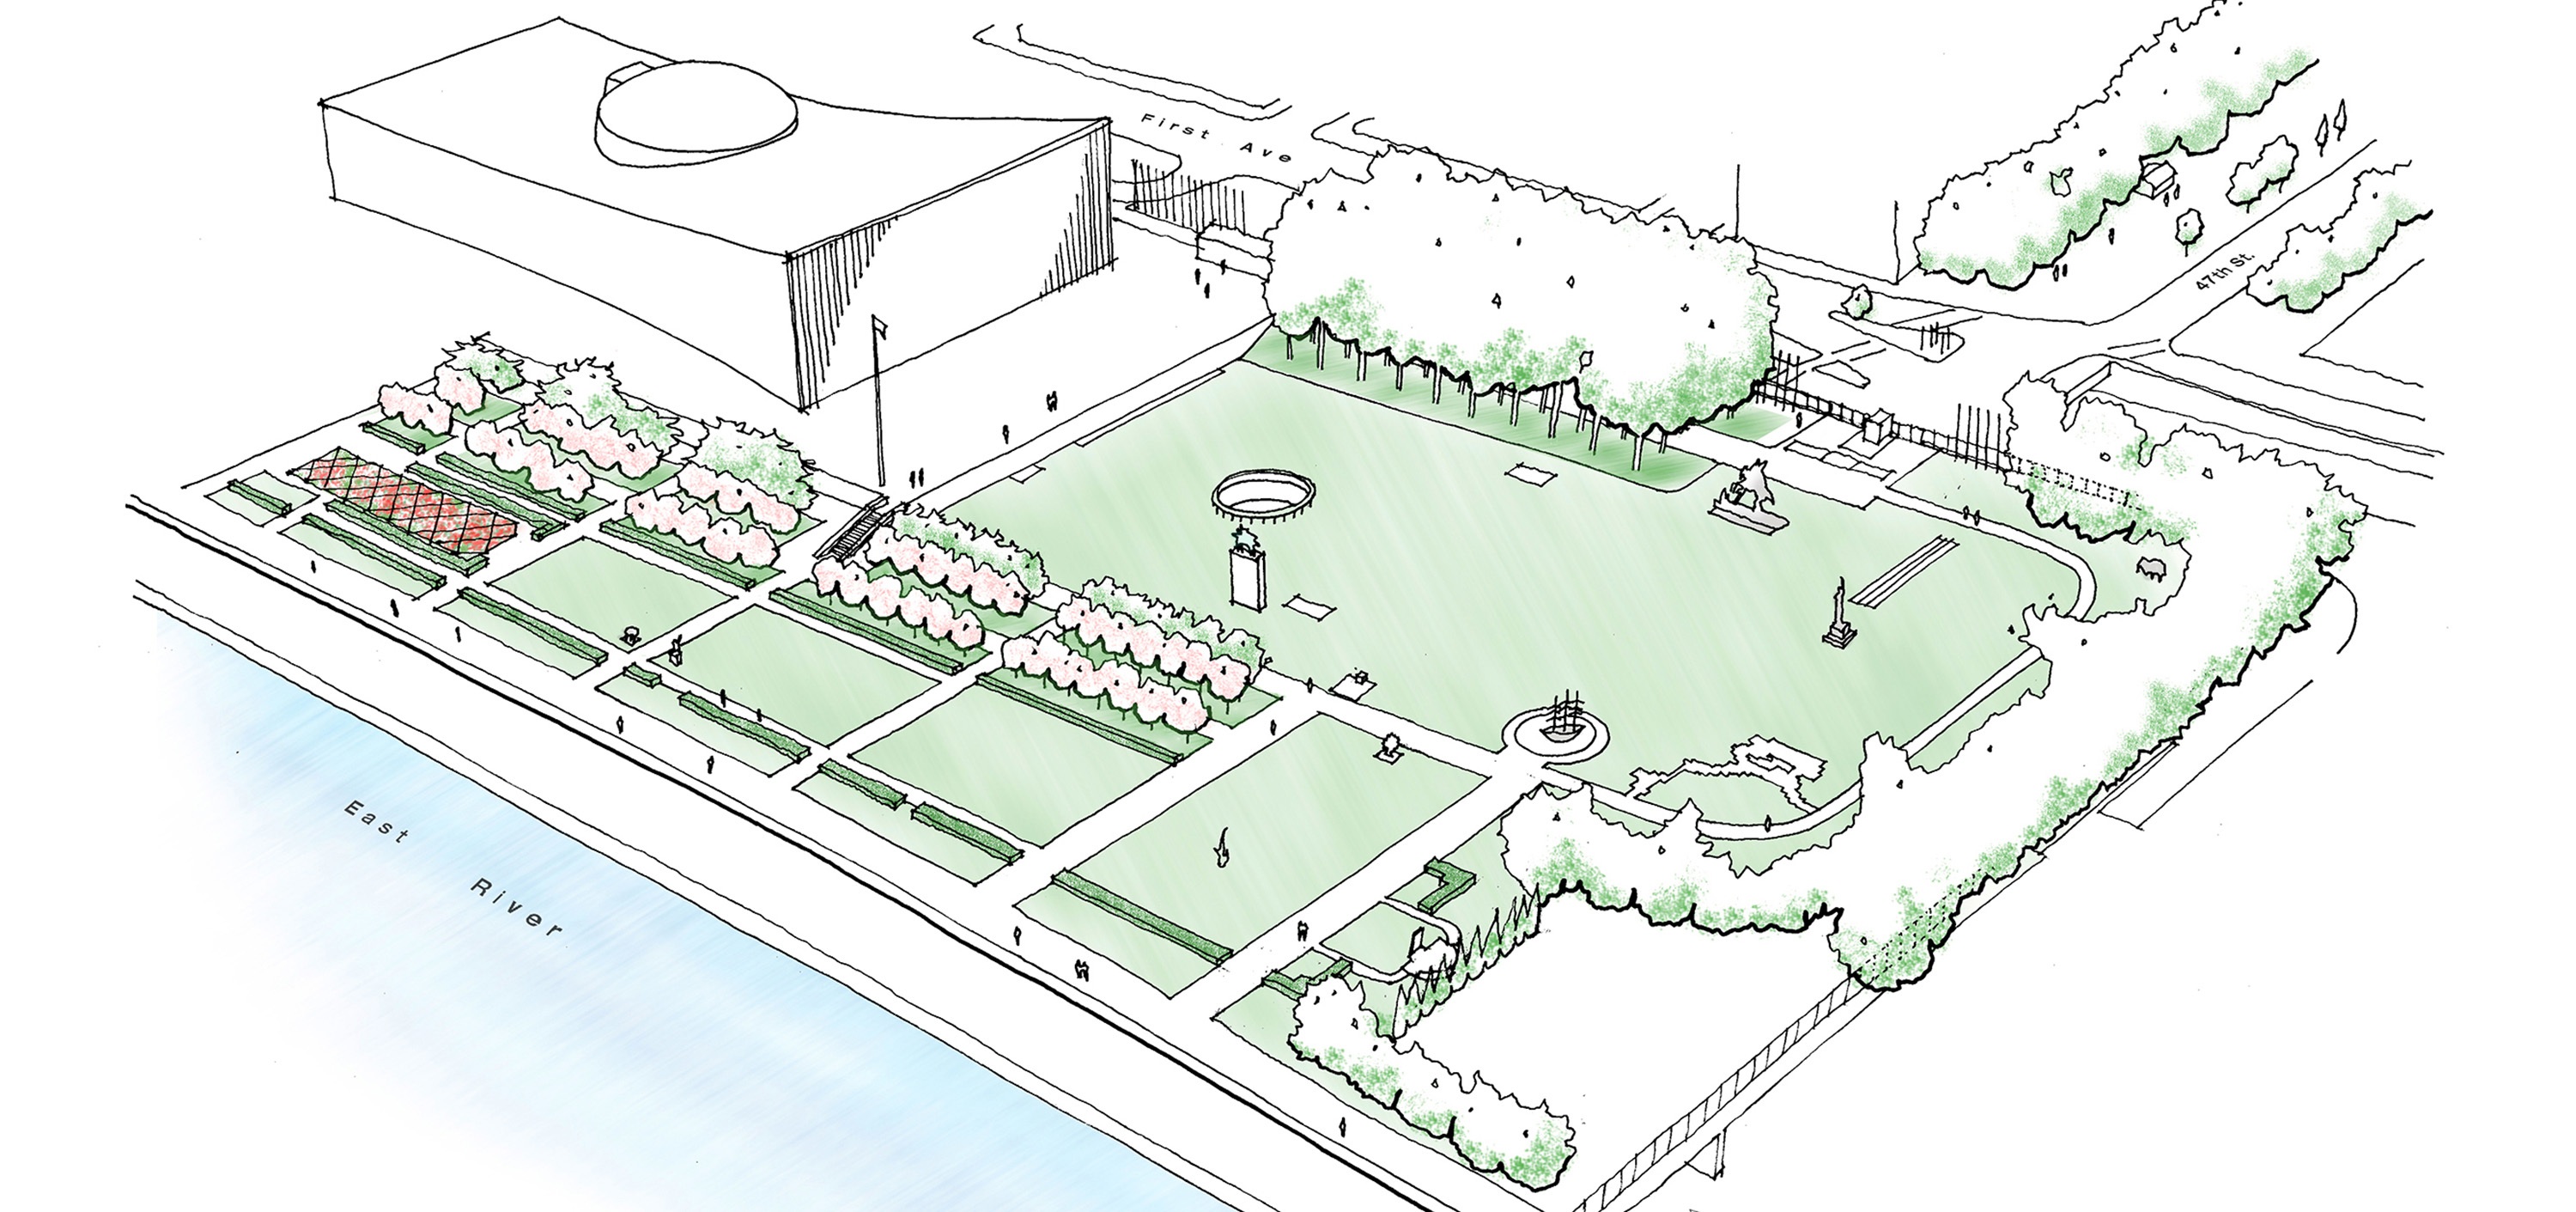 United Nations HQ Capital Master Plan Landscape Design Sketch